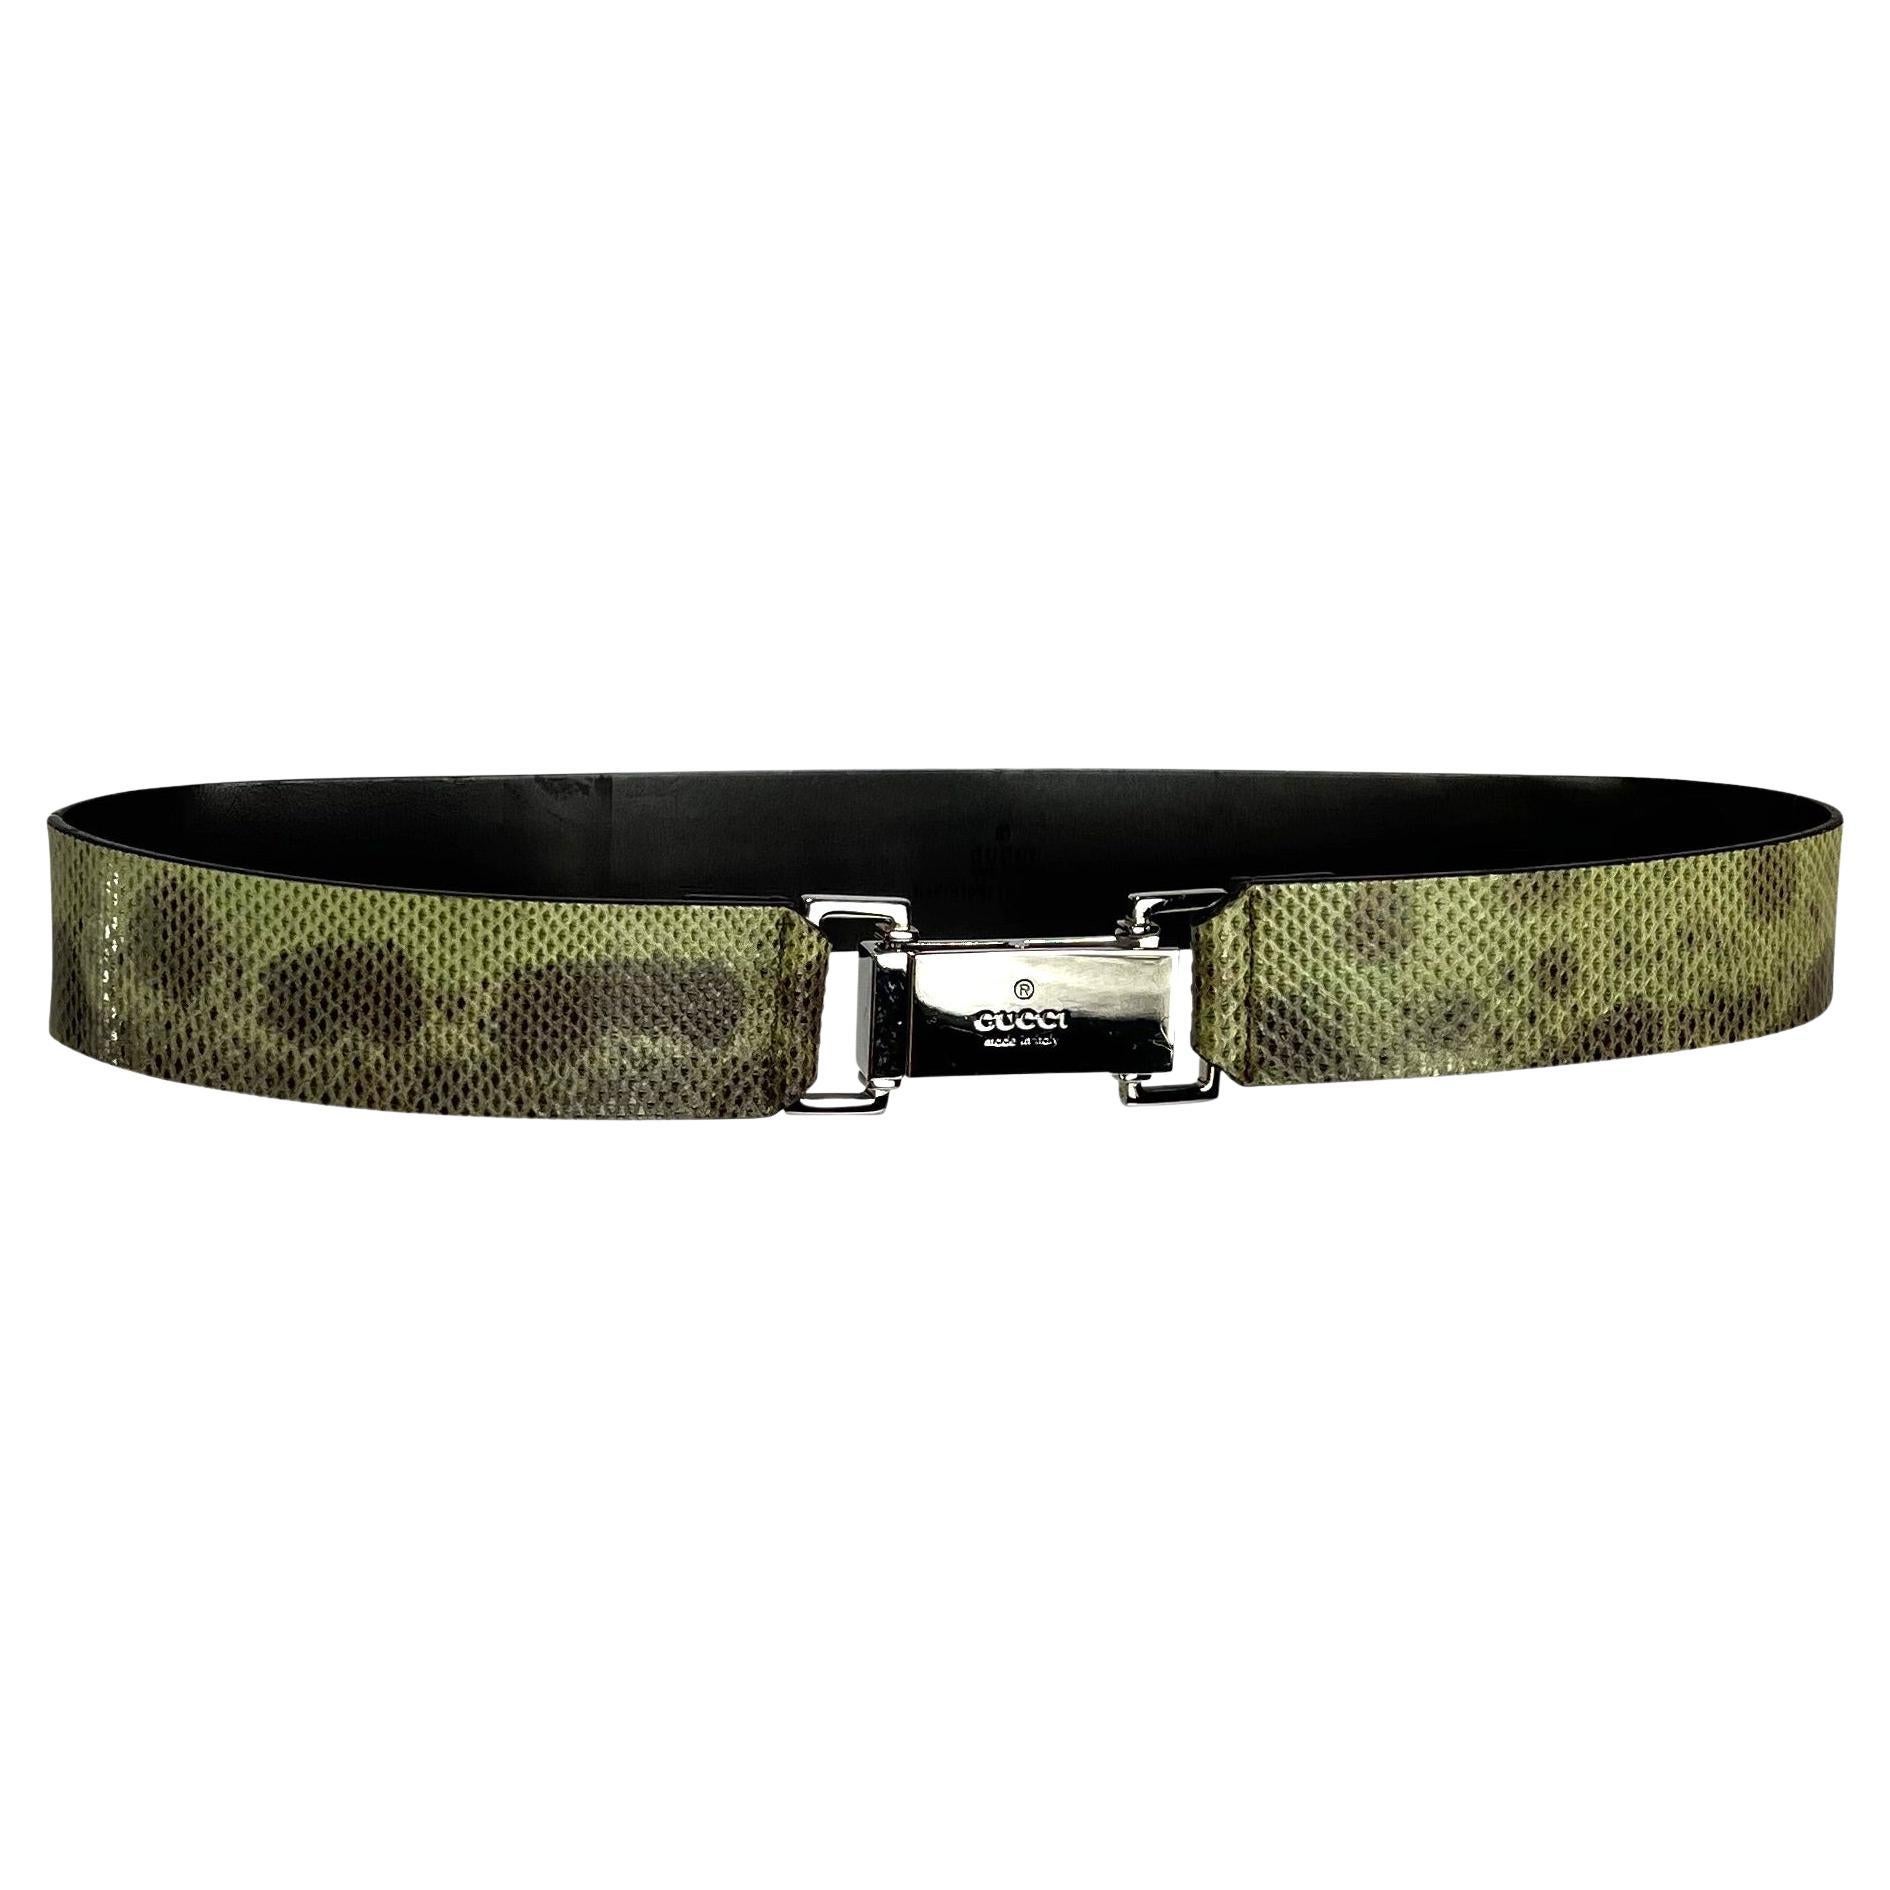 Gucci Snake Belt - For Sale on 1stDibs | gucci belt with snake, gucci snake  belts, snake belt buckle gucci